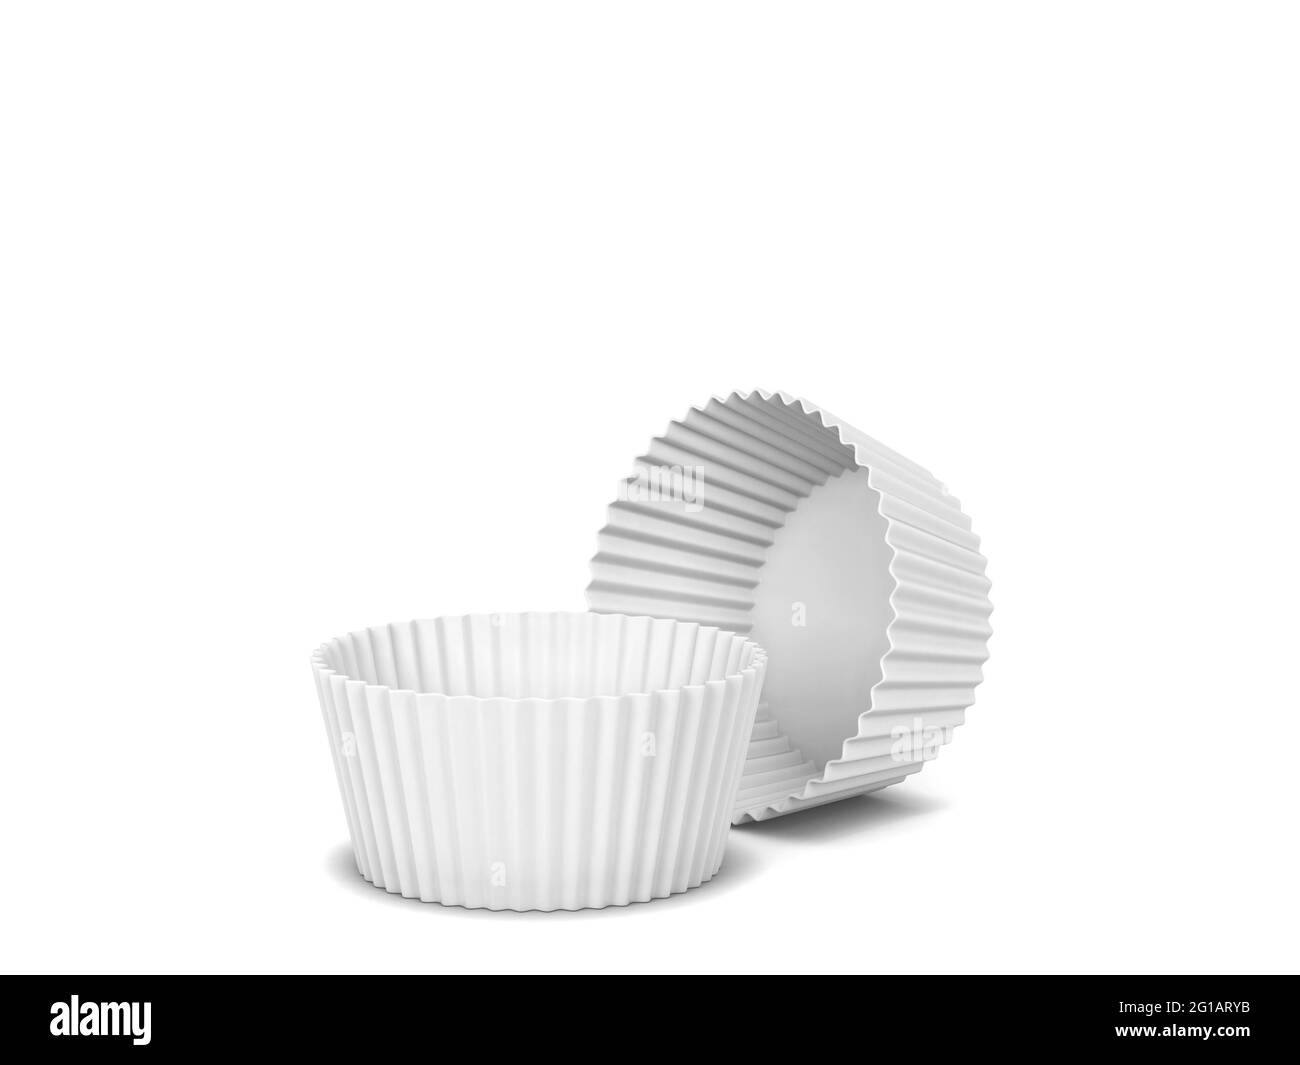 Forme en silicone pour cupcake vierge. illustration 3d isolée sur fond blanc. Ustensile de boulangerie Banque D'Images